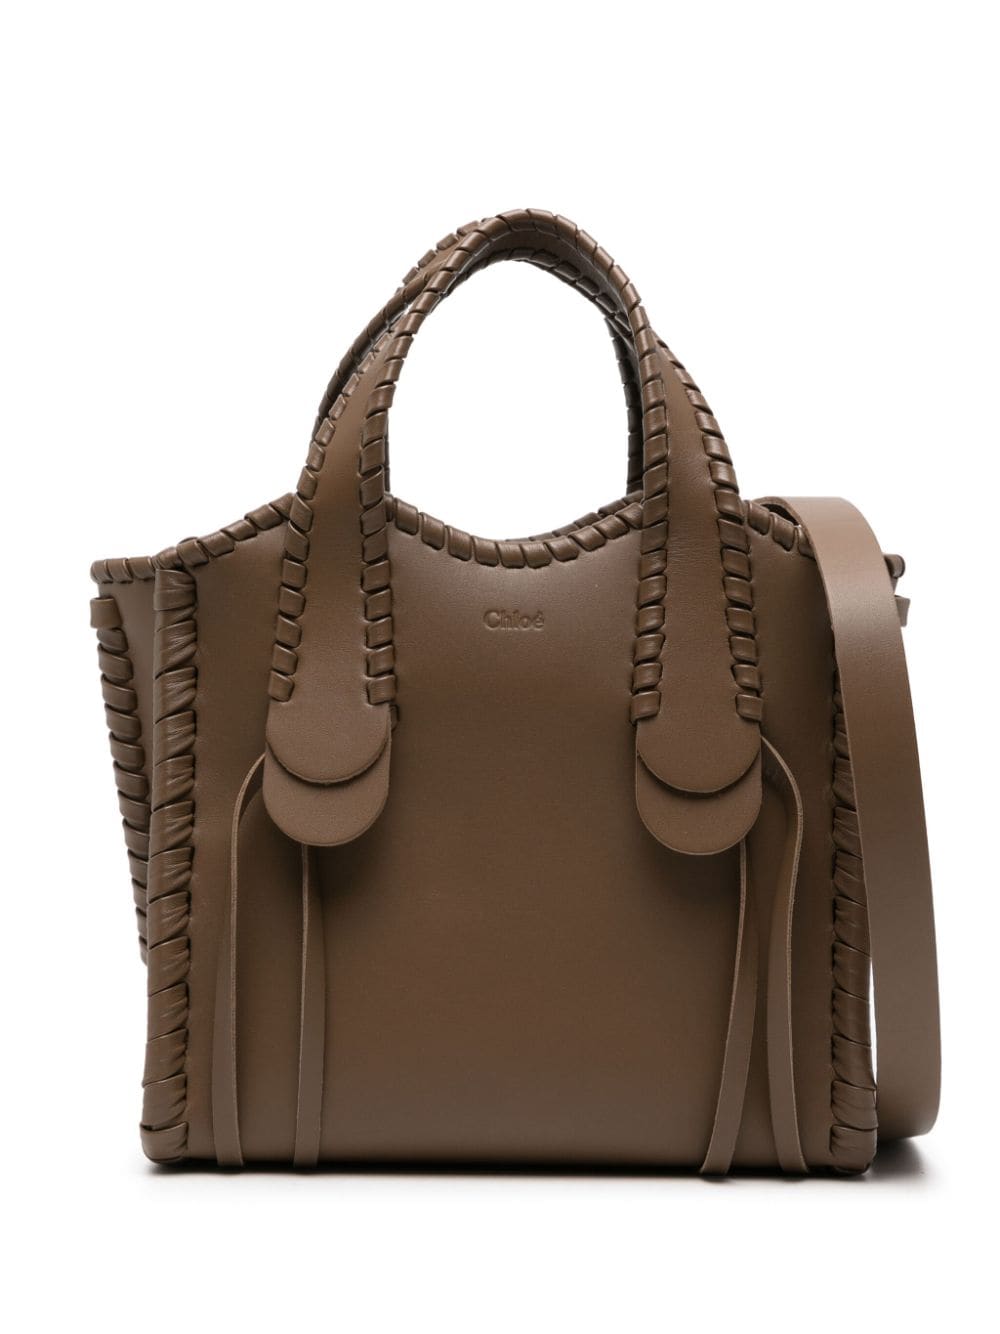 Chloé small Mony leather tote bag - Brown von Chloé